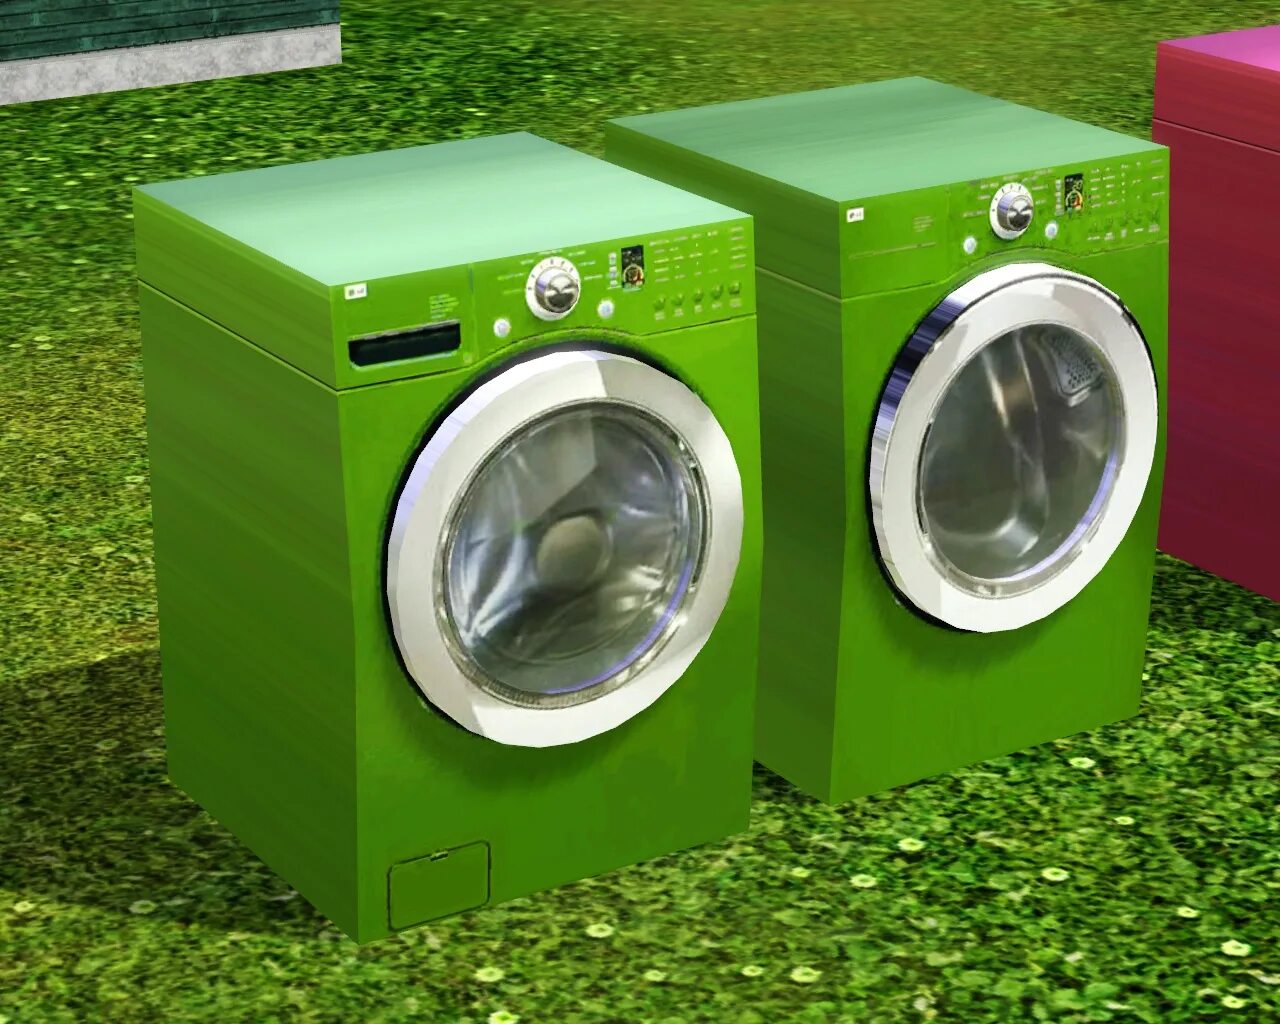 Стиральная машина новая купить спб. Симс 4 стиральная машина. Veko стиральная машинка зеленая. SIMS 4 стиральная машина мод. Стиральная машина цветная.